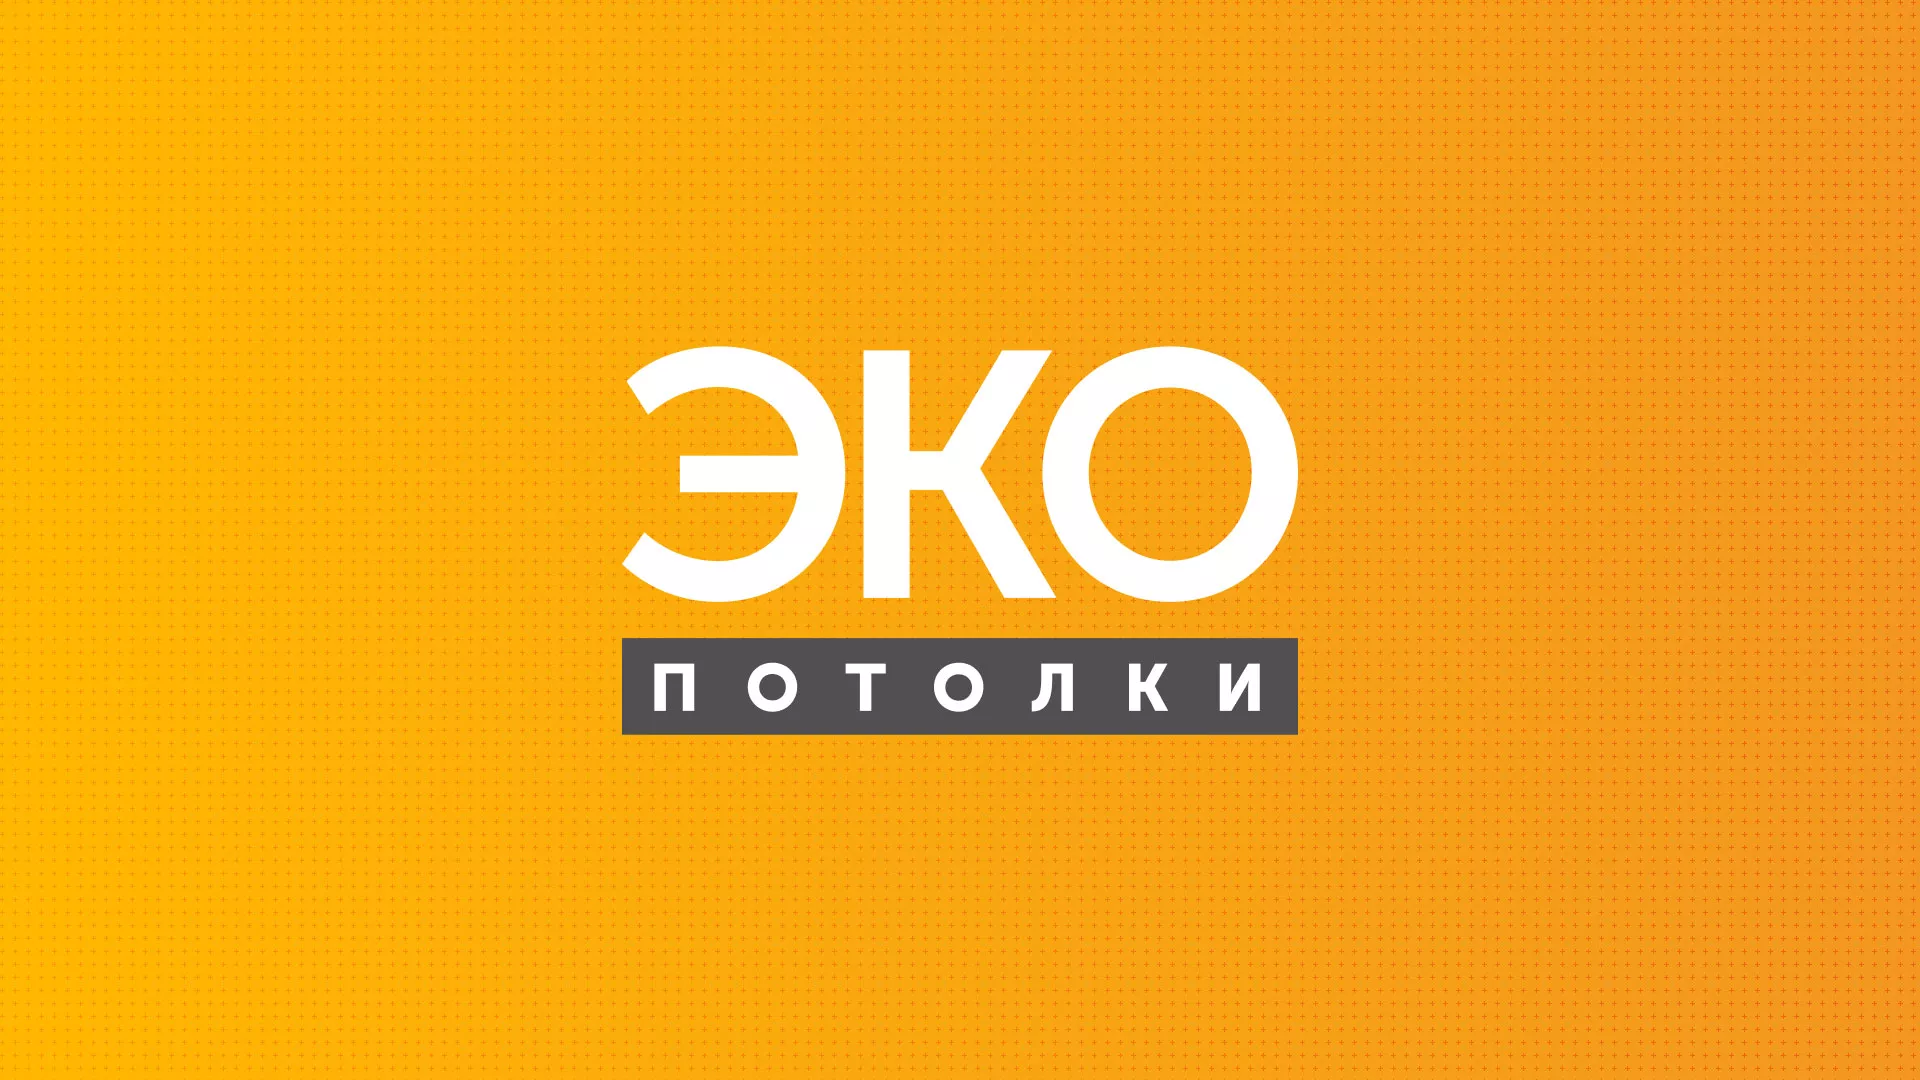 Разработка сайта по натяжным потолкам «Эко Потолки» в Александровске